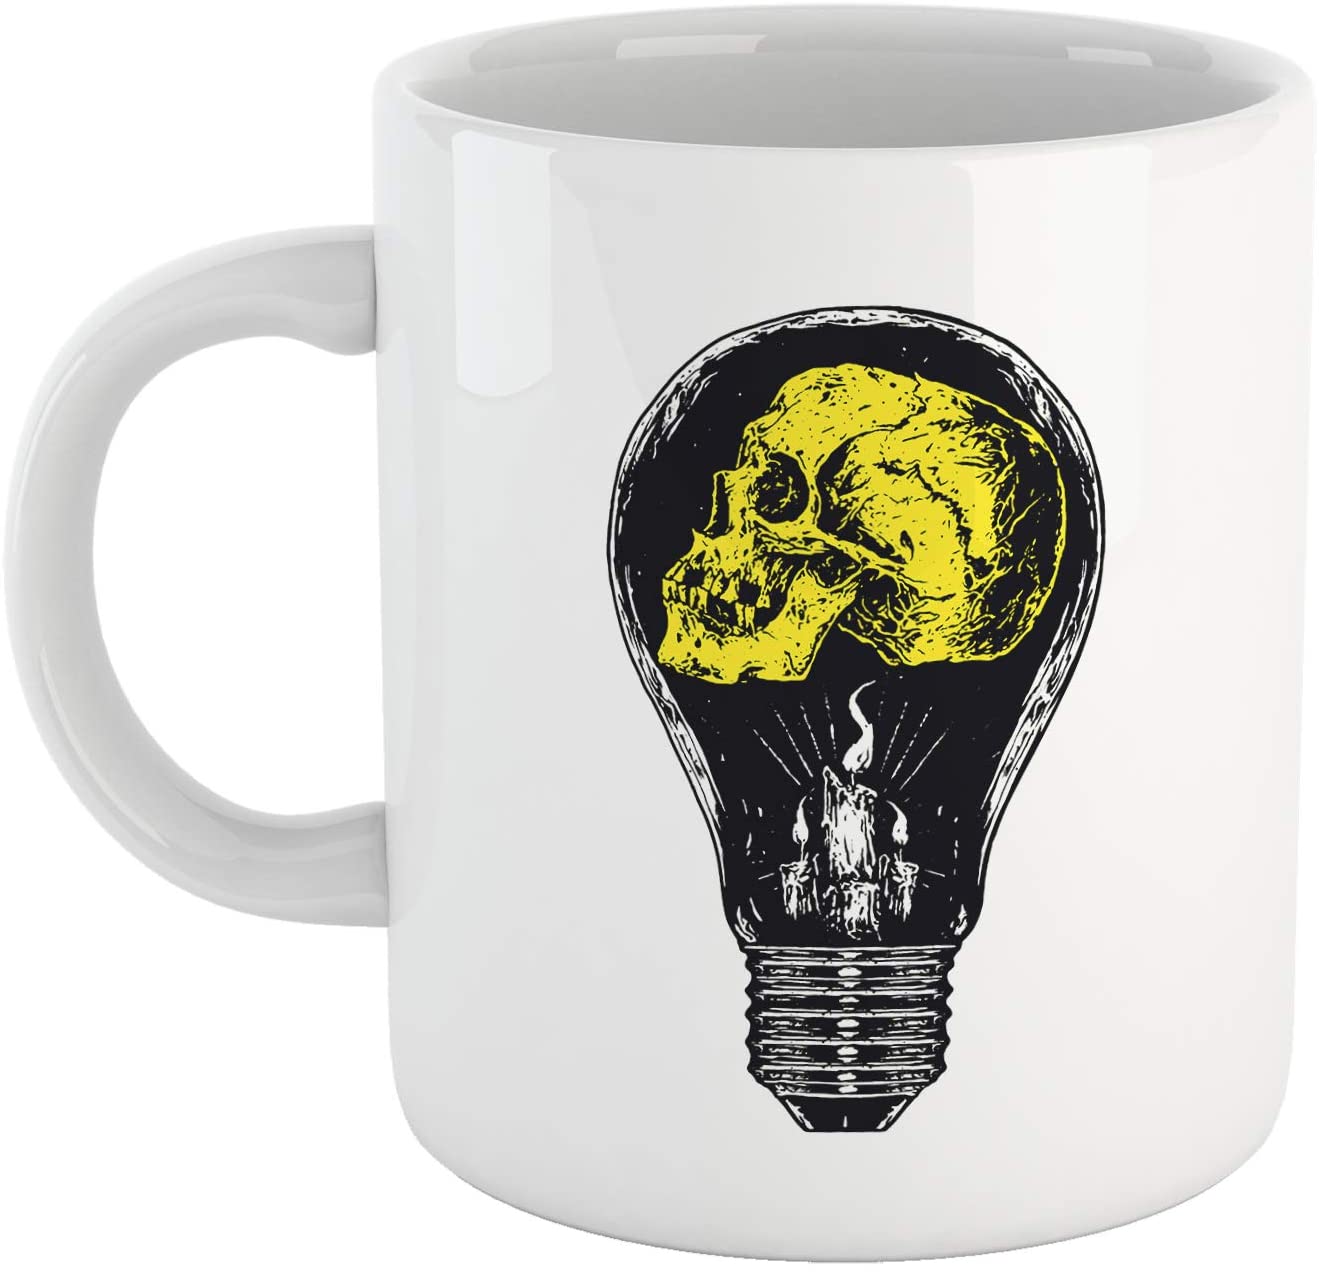 Goldenrod Tazza Skull Idea - Mug Accattivante con Un Teschio e Le Candele per Fare Colazione con Stile - Choose ur Color Cuc shop